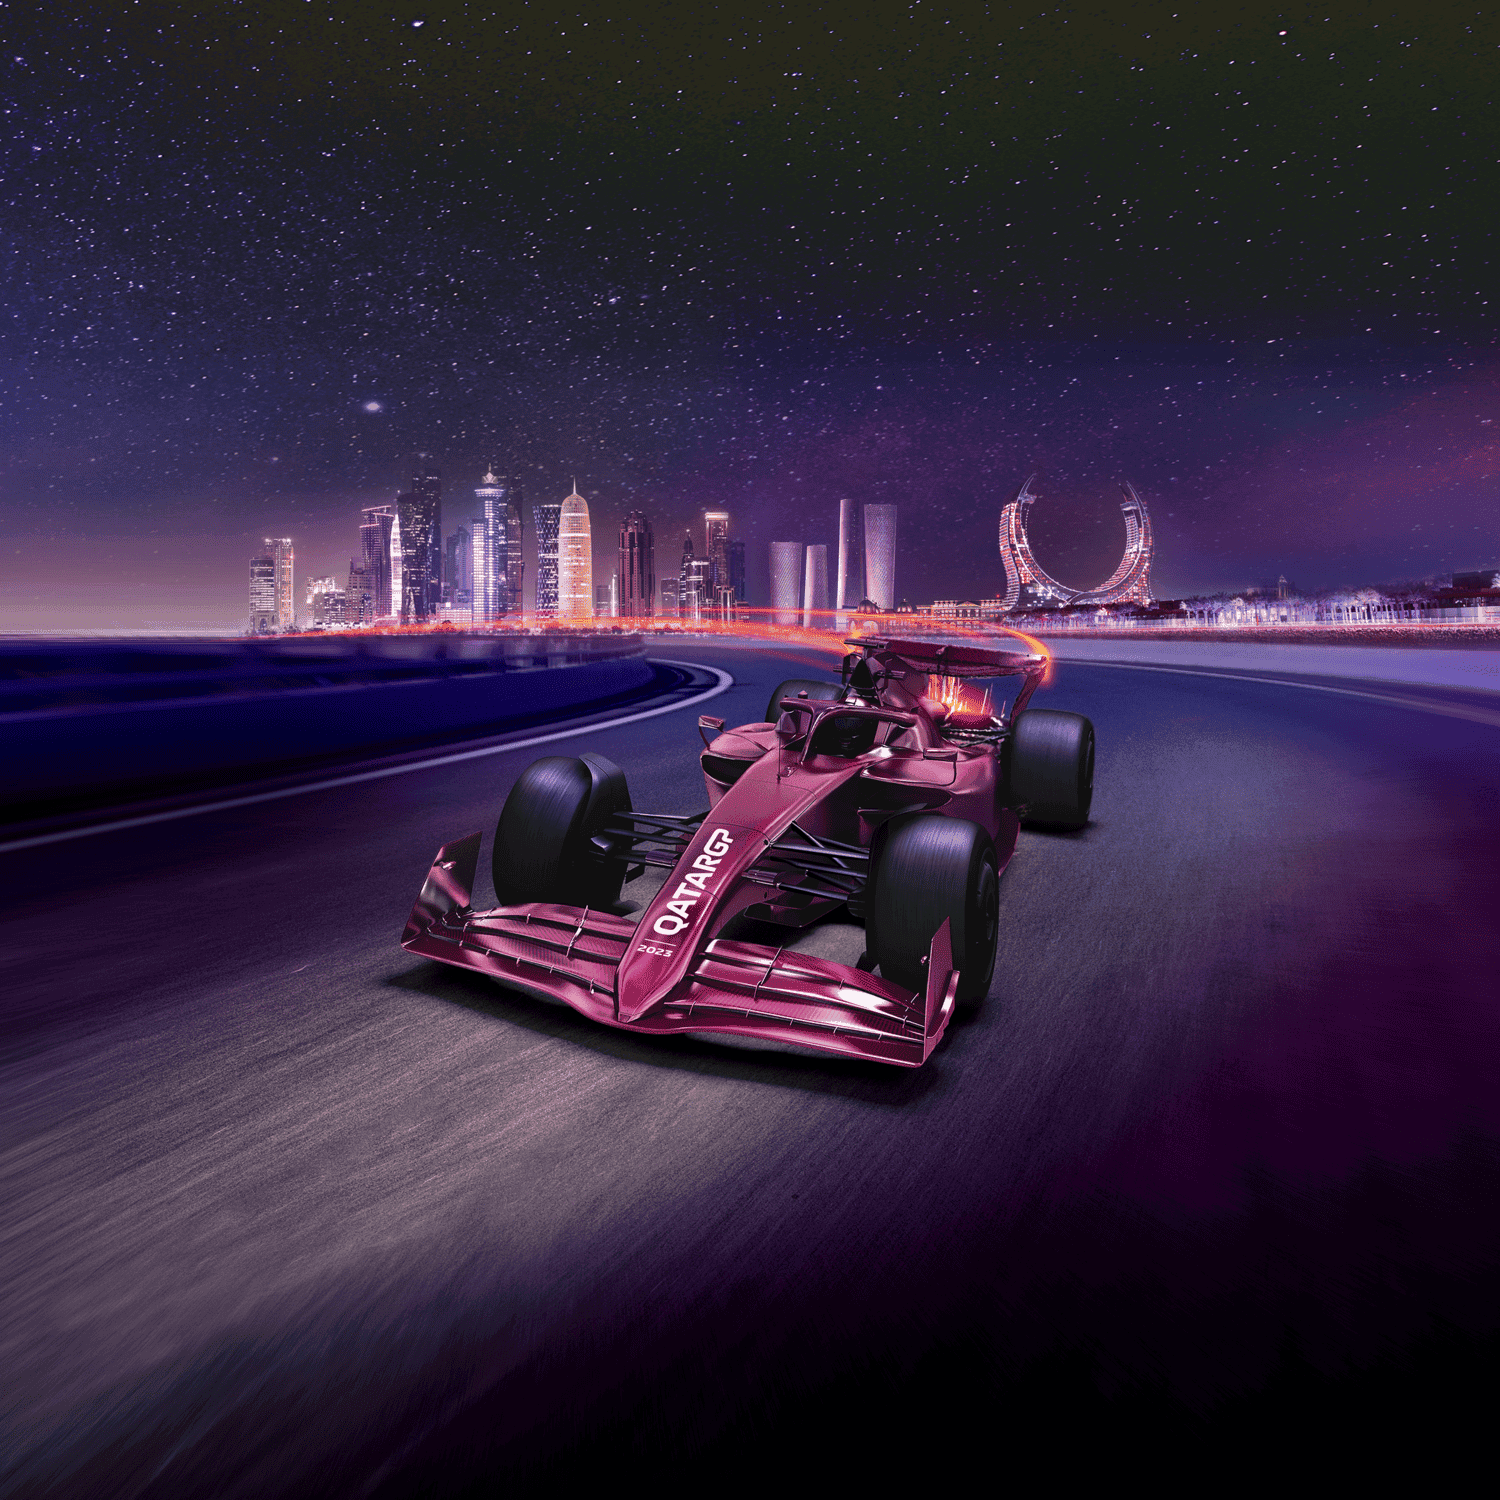 2023 年卡塔尔航空公司一级方程式卡塔尔大奖赛 (Formula 1® Qatar Airways Qatar Grand Prix 2023)